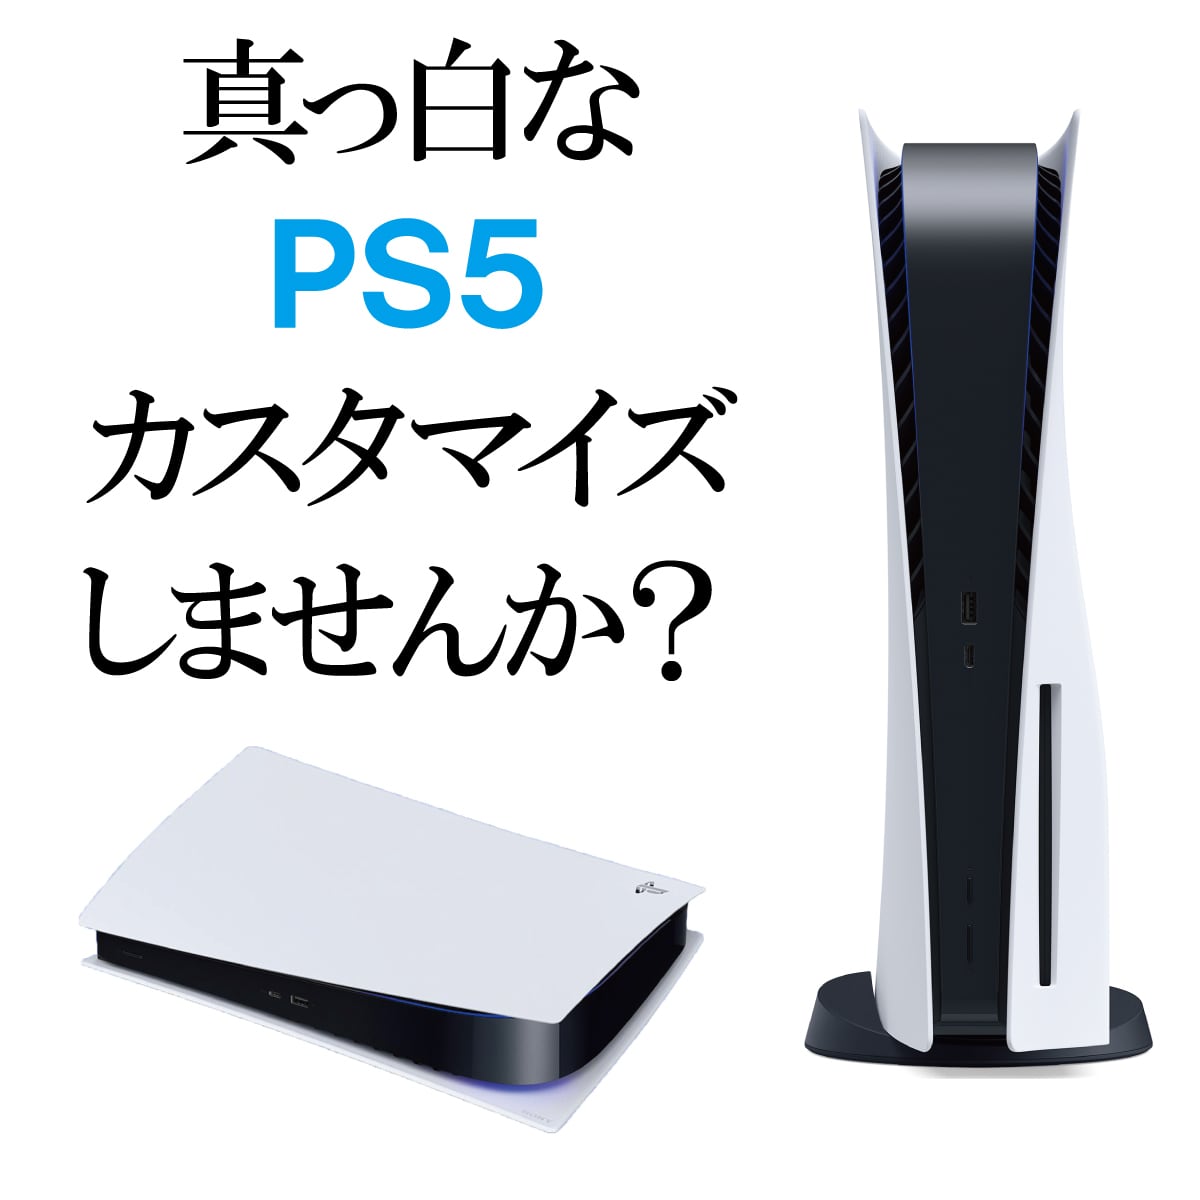 PS5 カバー プレステ5 フェイスプレート 本体 Play Station 5 通常版 デジタルエディション PlayStation5 周辺機器  純正コントローラーとの色合わせ CFI-1000 CFI-1100 CFI-1200 | スタート